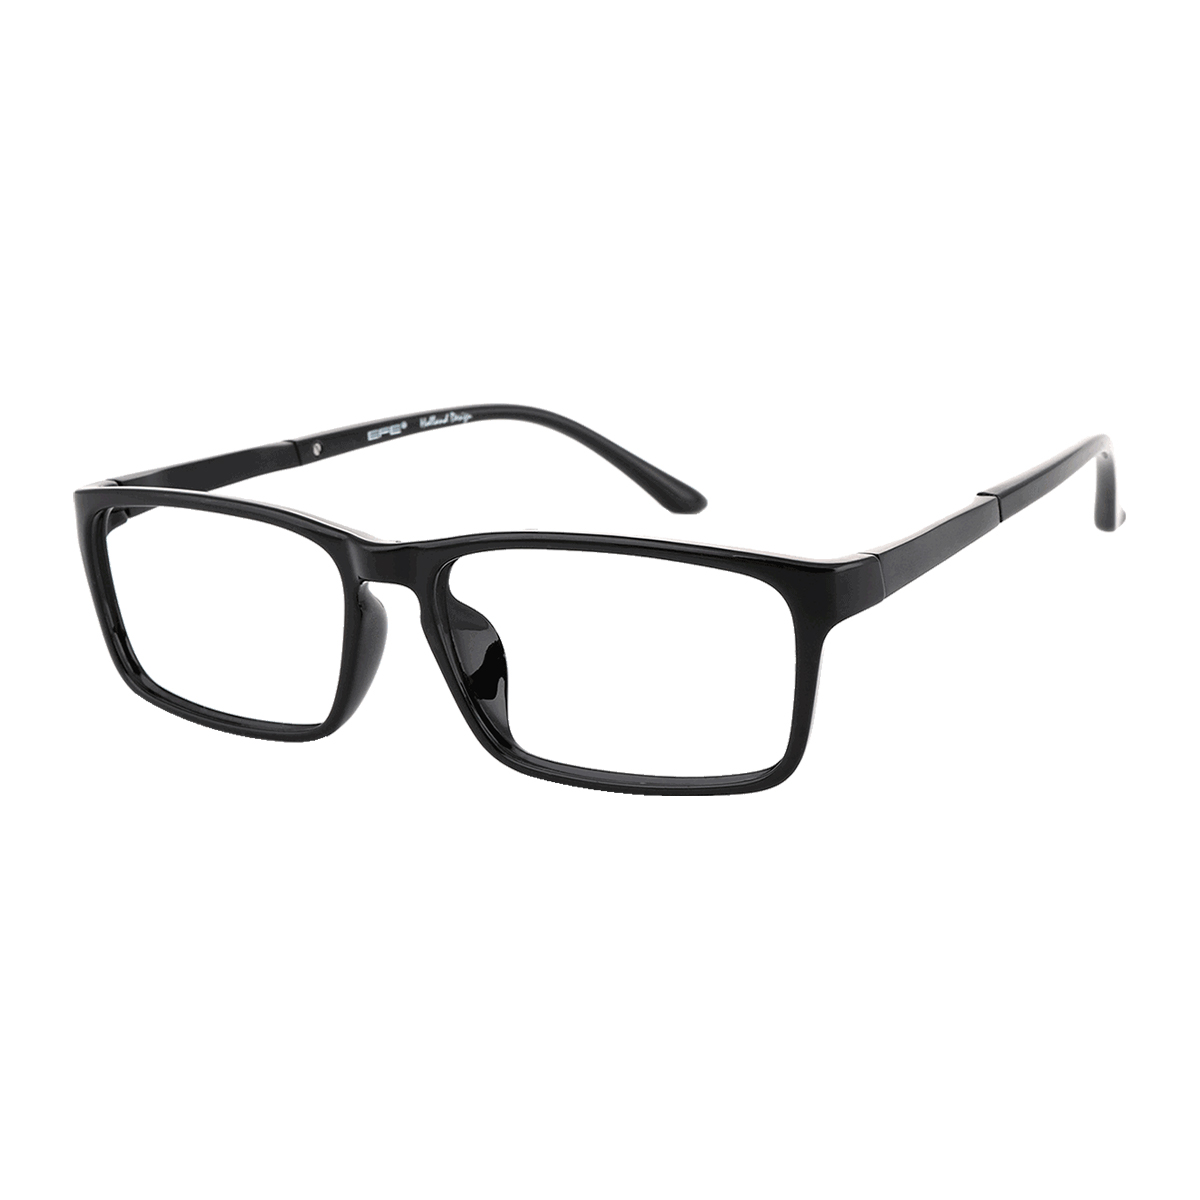 Aberdeen - Rectangle Black Reading Glasses for Men & Women